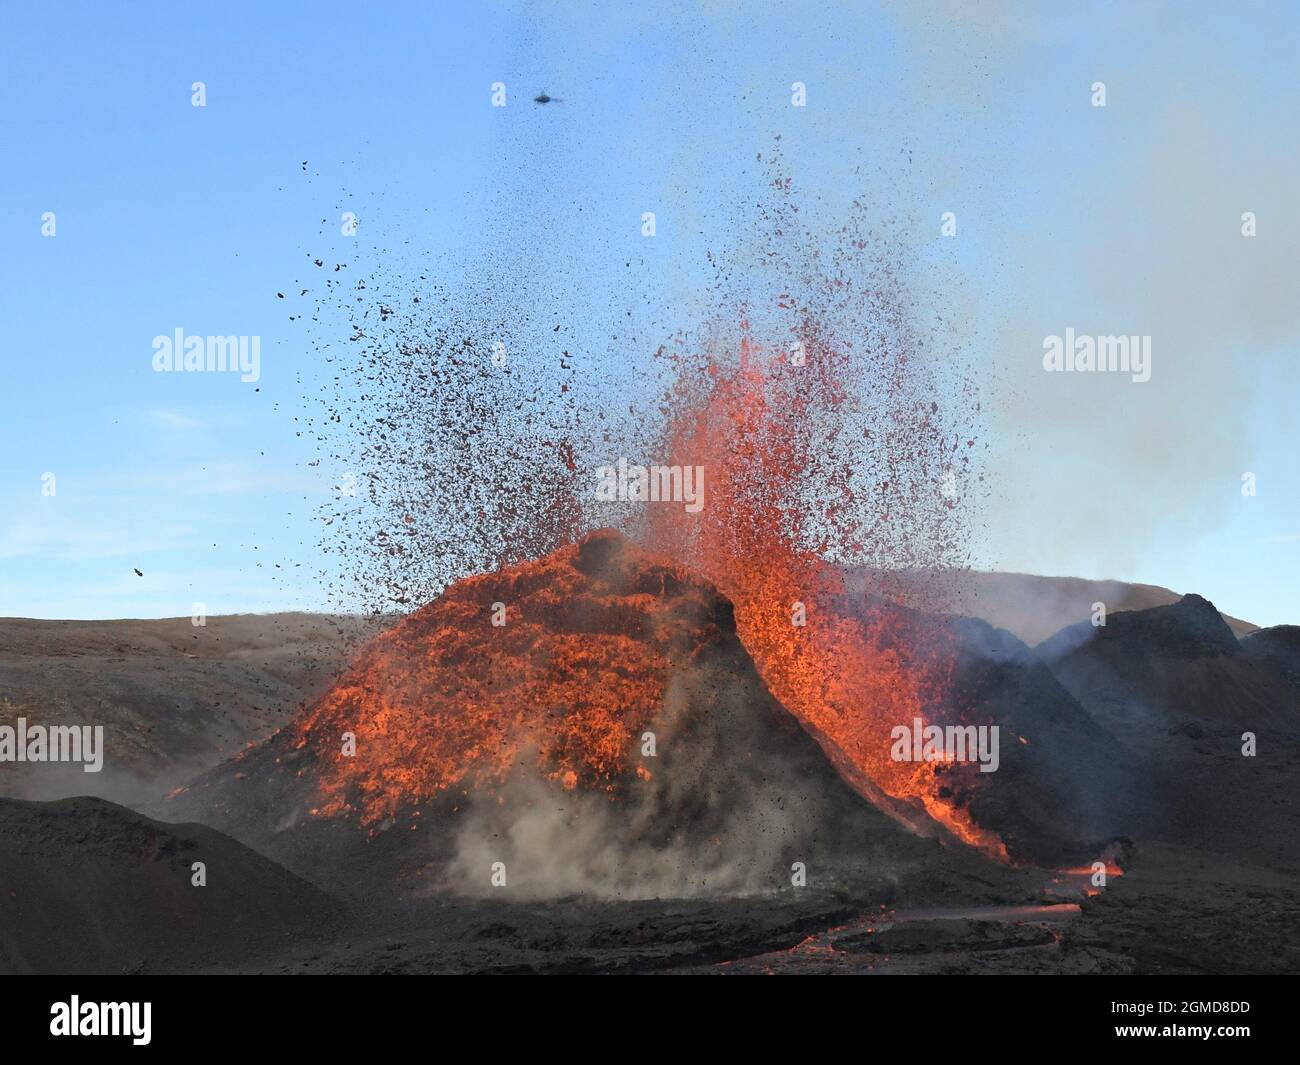 Évent volcanique à Fagradalsfjall, Islande, éruption d'orange incandescent et de lave rouge. Lave noire au premier plan et ciel bleu en arrière-plan. Banque D'Images